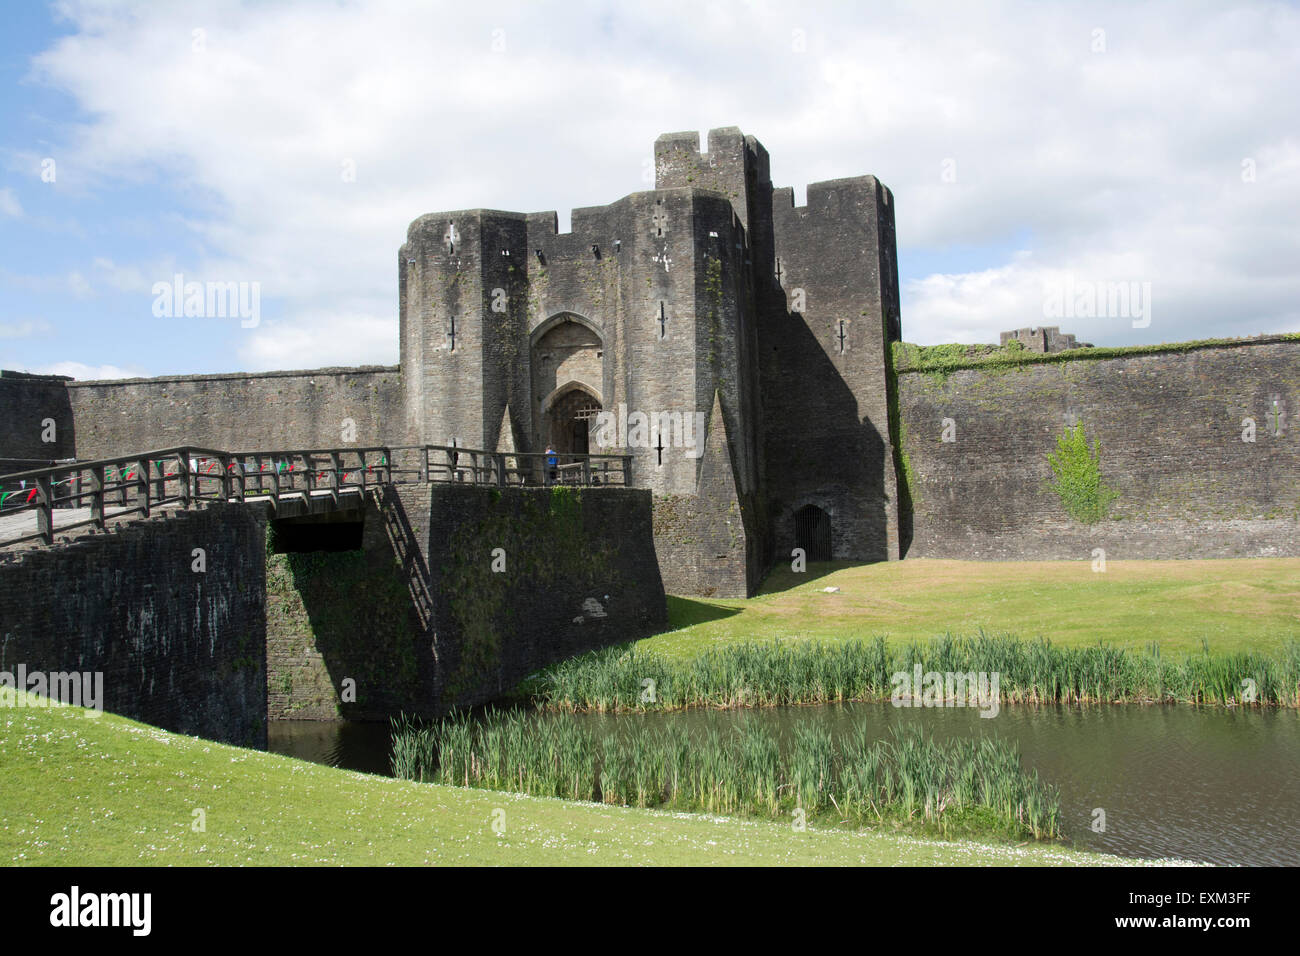 Pays de Galles ; CAERPHILLY ; château de Caerphilly et douves Banque D'Images